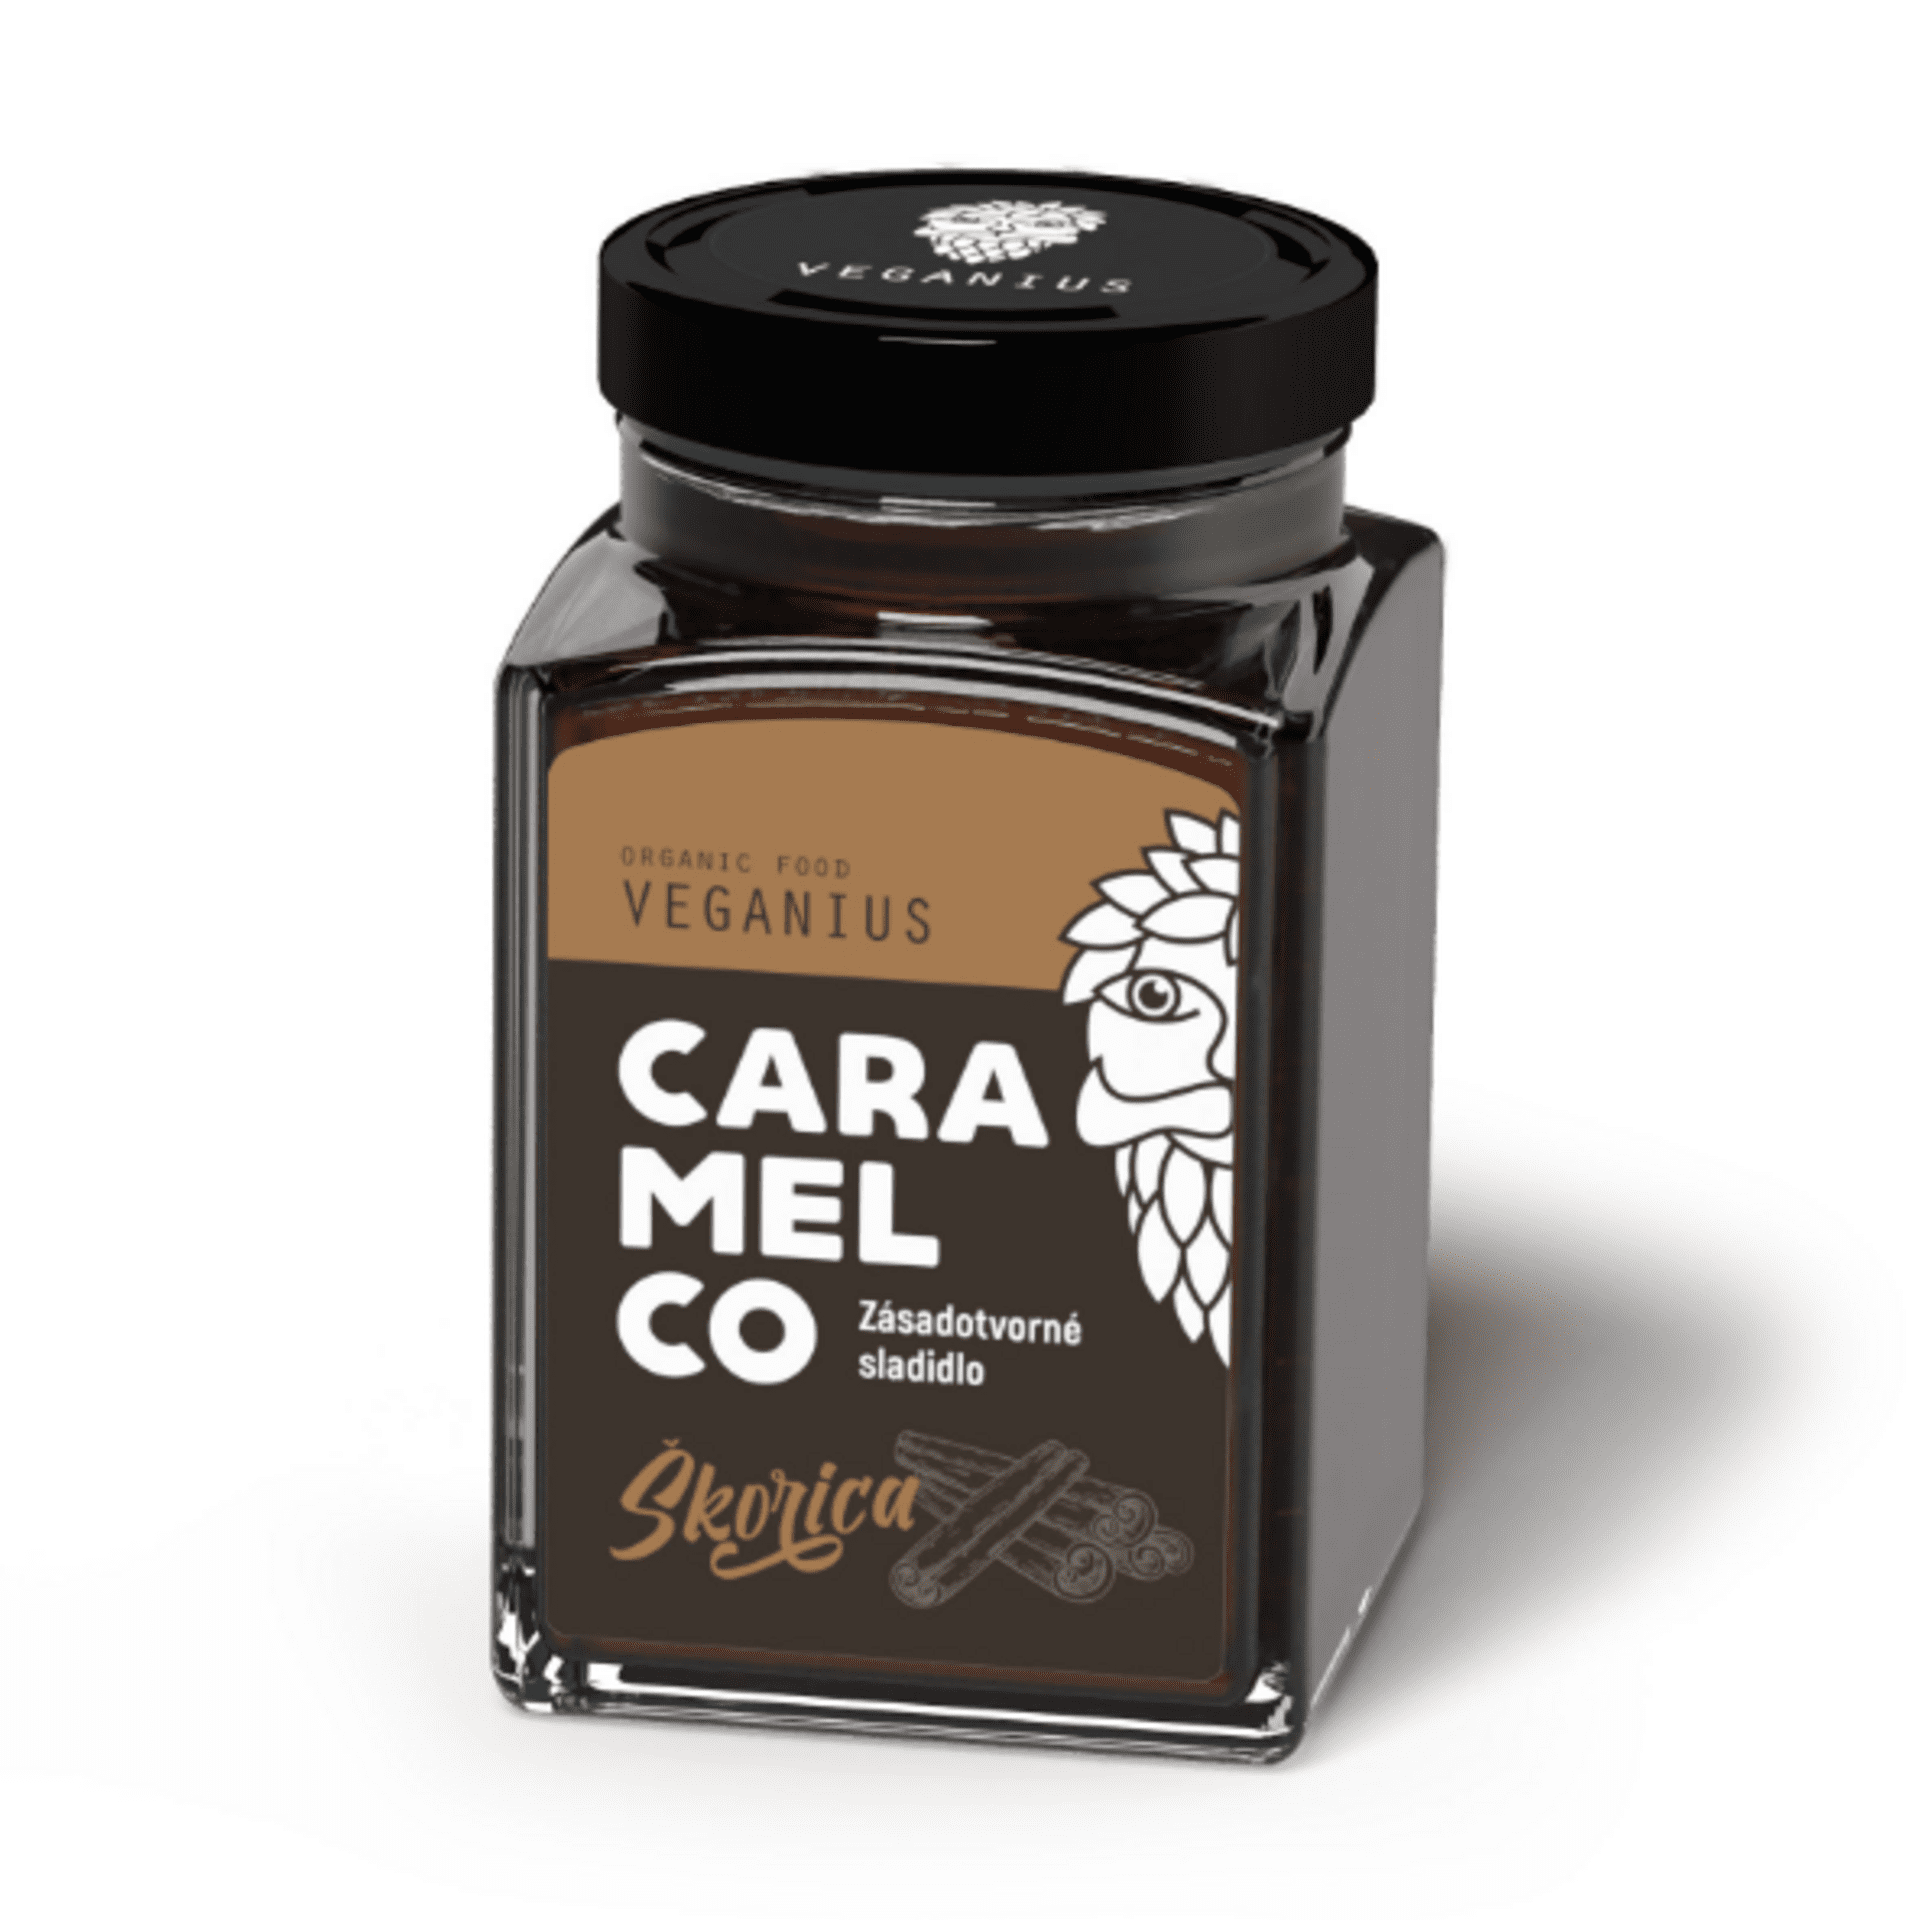 Levně Veganius Caramelco skořice sklo 250 ml